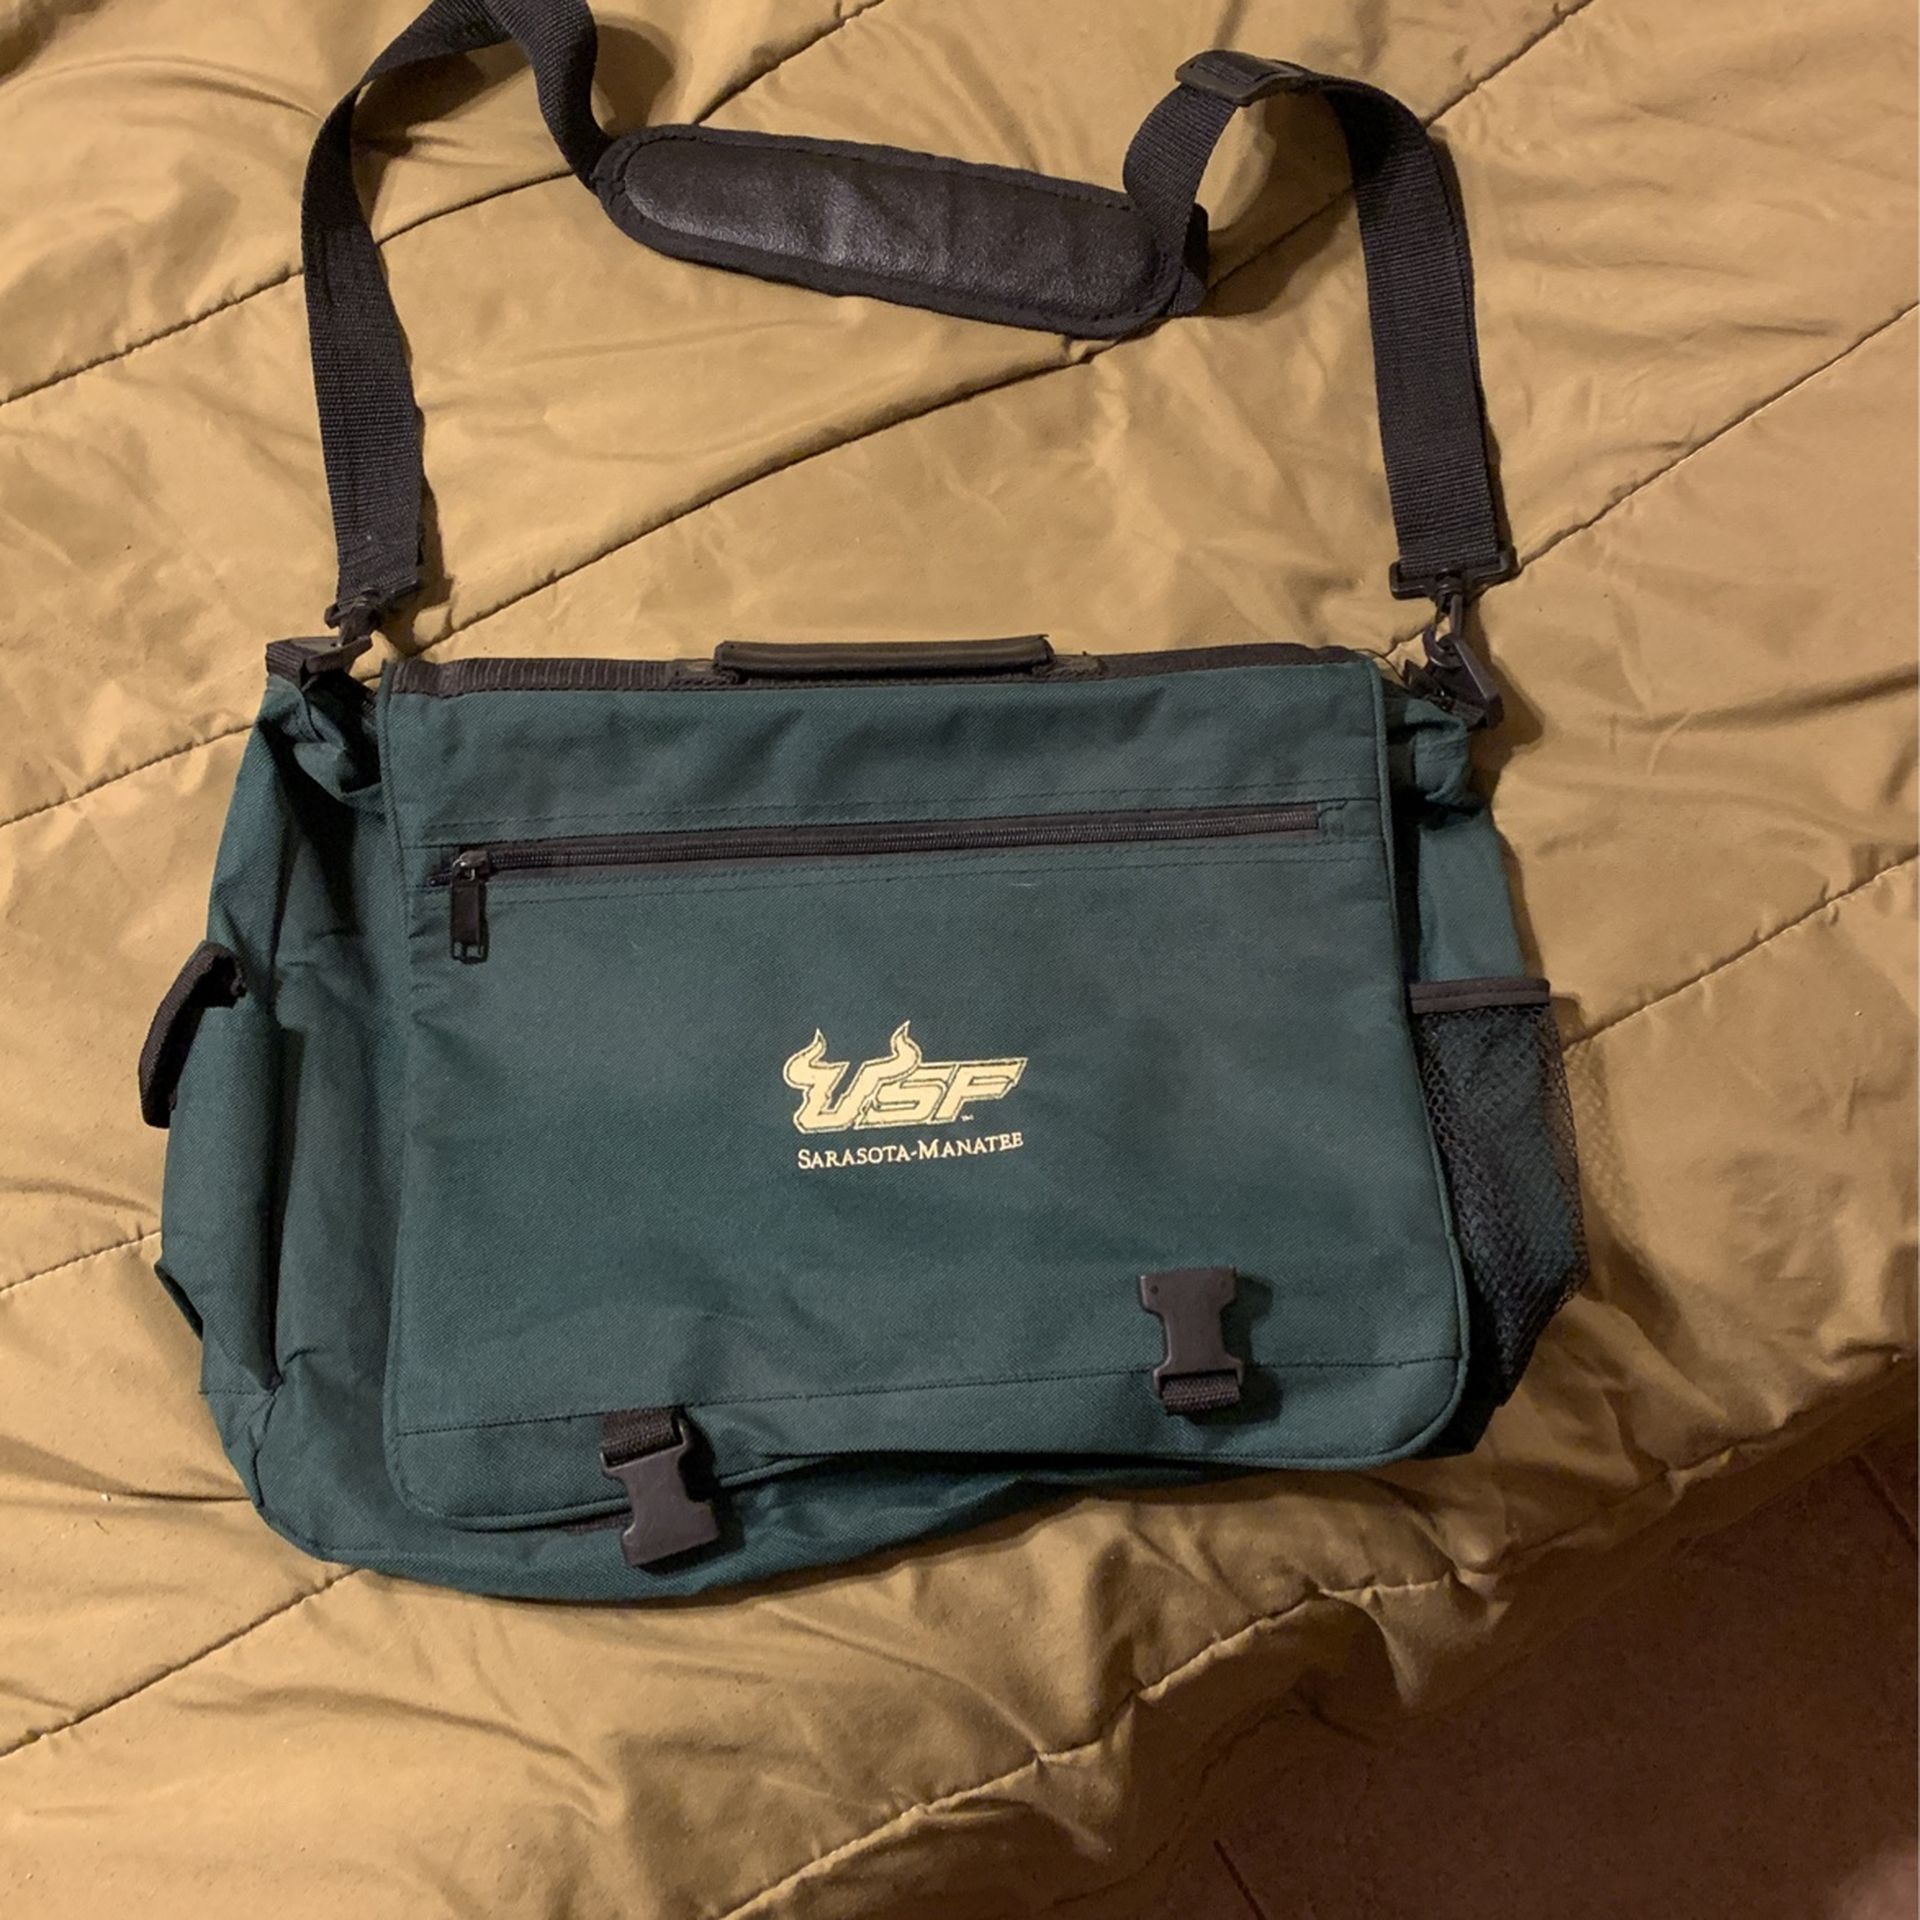 USF Messenger Bag Sarasota-Manatee